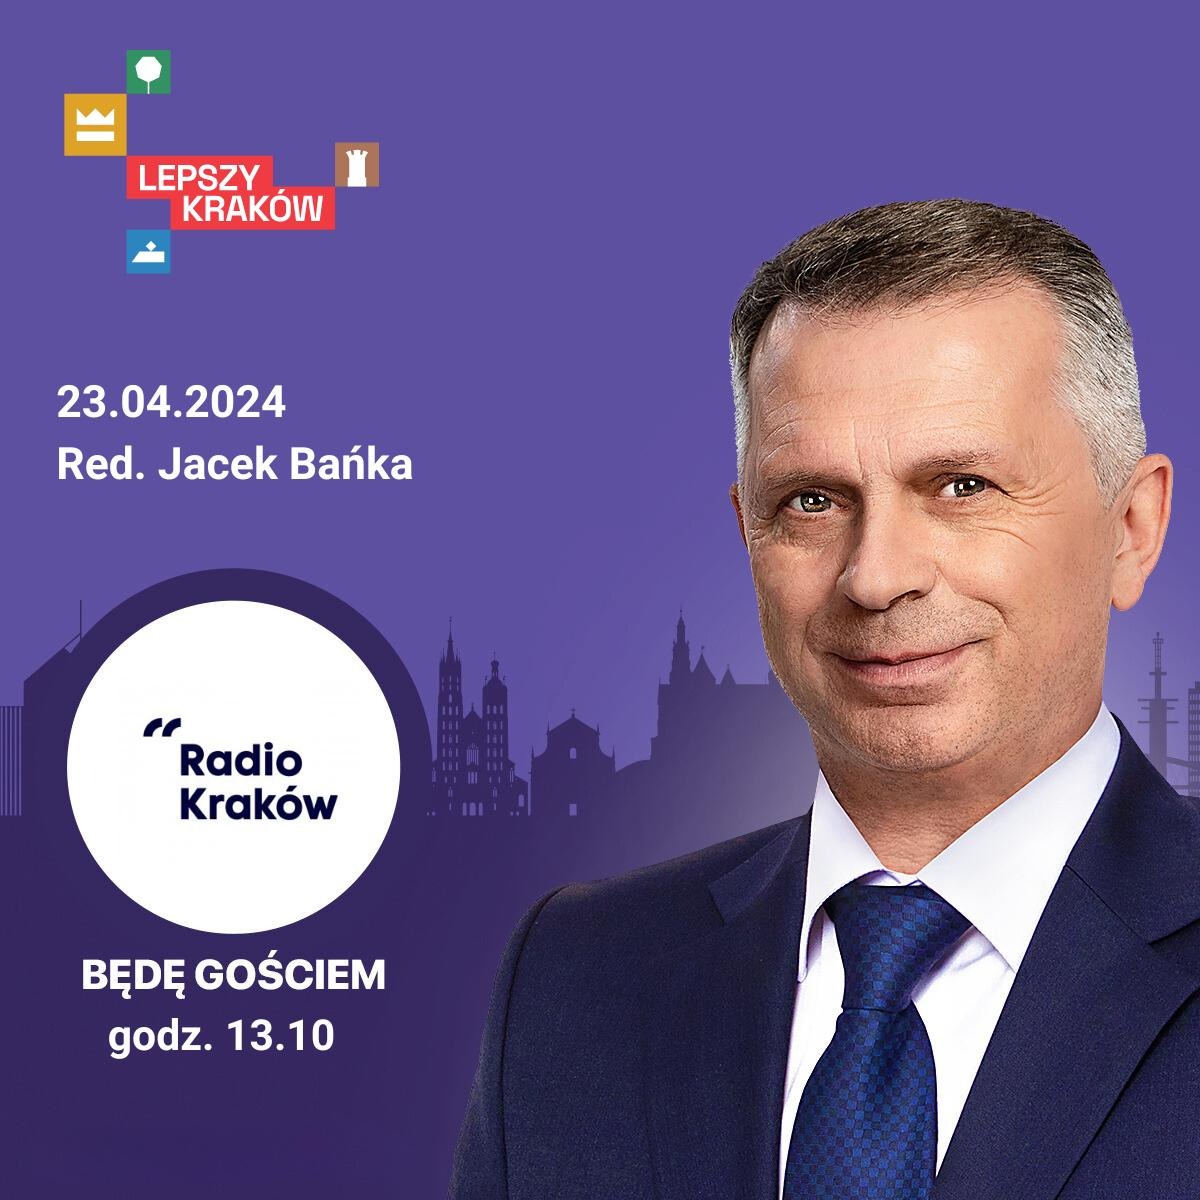 Zapraszam o godz. 13.10 na antenę @RadioKrakow Kraków. Z @j_banka porozmawiamy o Krakowie i zarządzaniu zmianą. #LepszyKraków